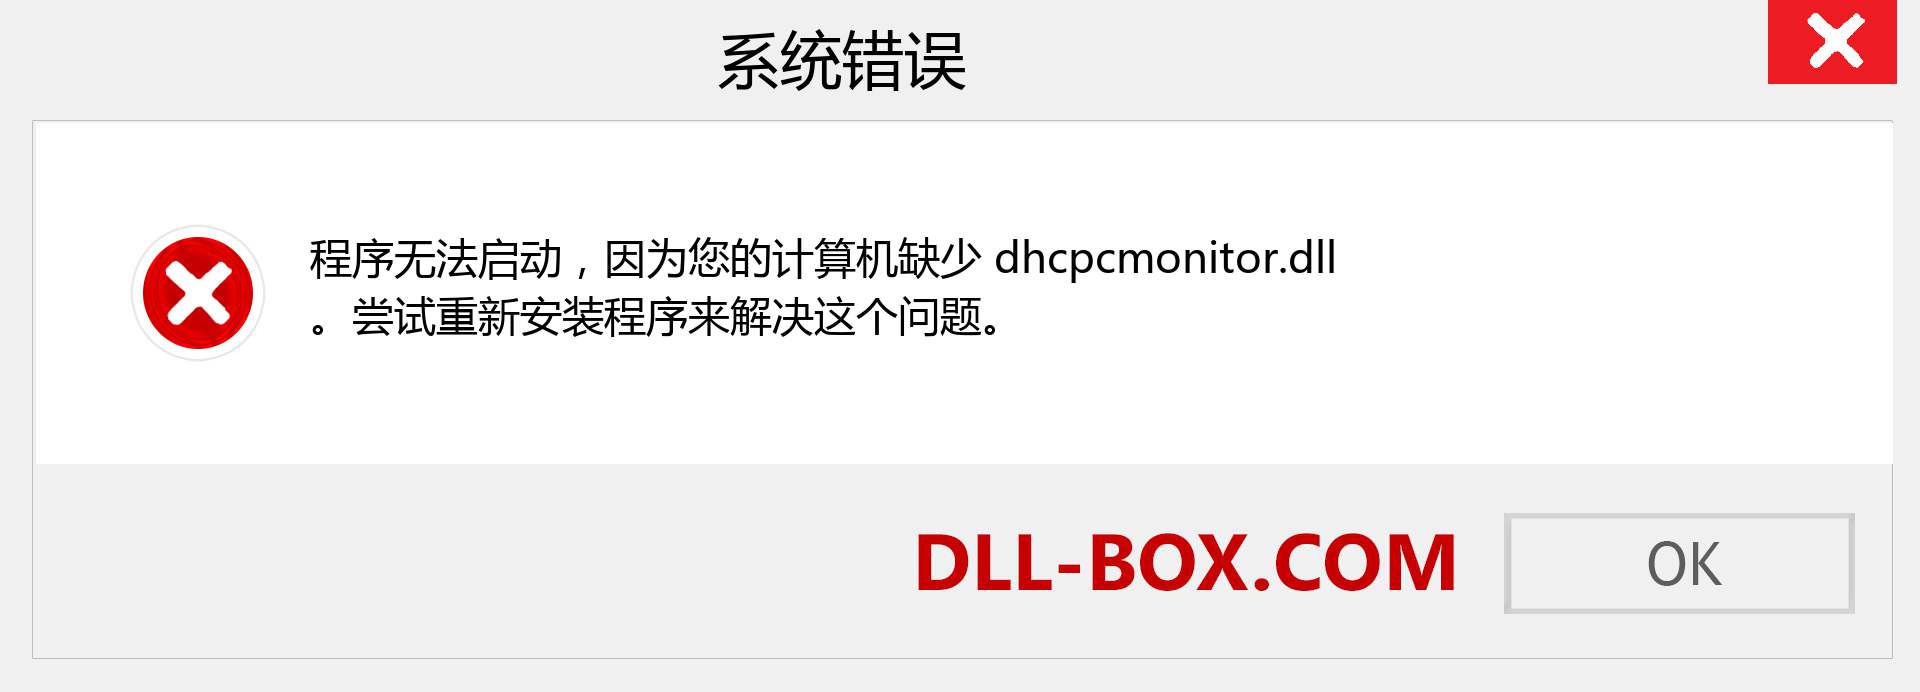 dhcpcmonitor.dll 文件丢失？。 适用于 Windows 7、8、10 的下载 - 修复 Windows、照片、图像上的 dhcpcmonitor dll 丢失错误